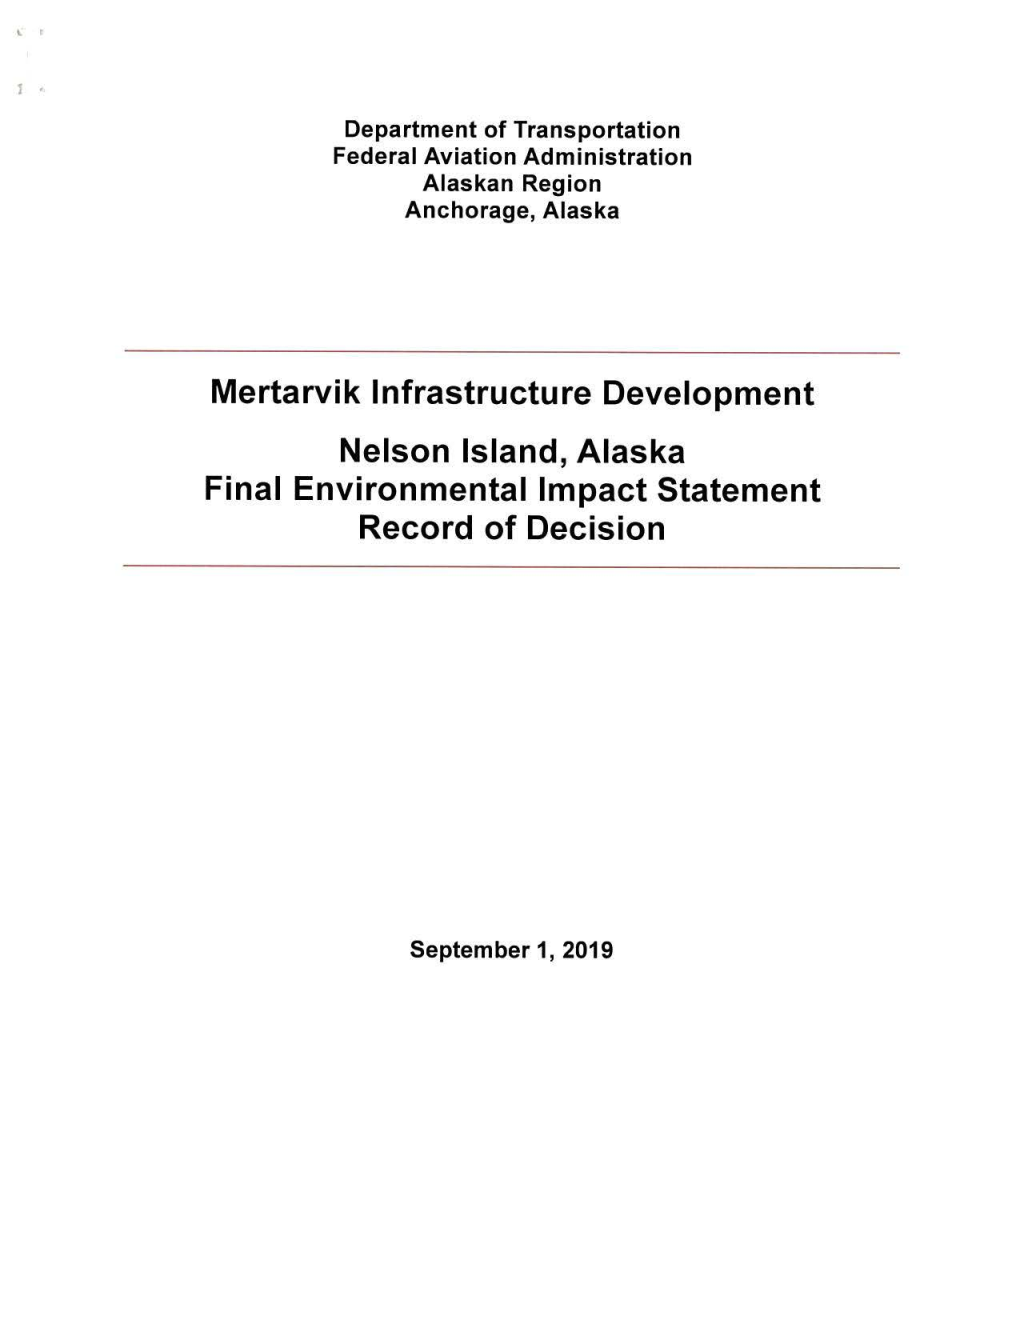 Mertarvik Infrastructure Development, Nelson Island, Alaska Final